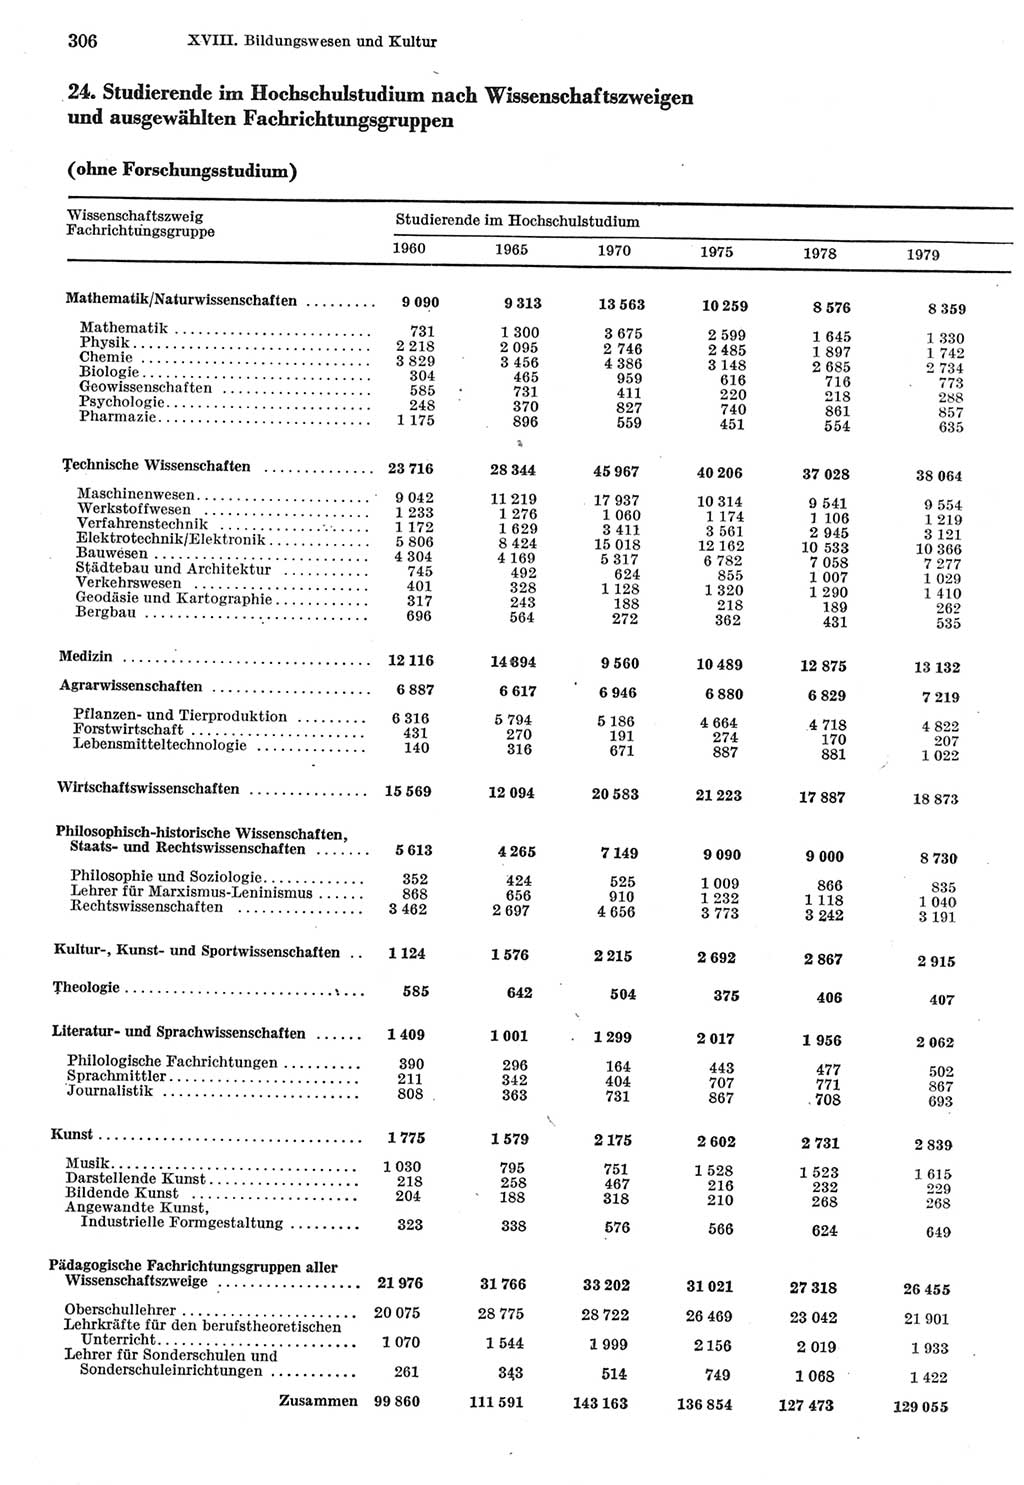 Statistisches Jahrbuch der Deutschen Demokratischen Republik (DDR) 1980, Seite 306 (Stat. Jb. DDR 1980, S. 306)